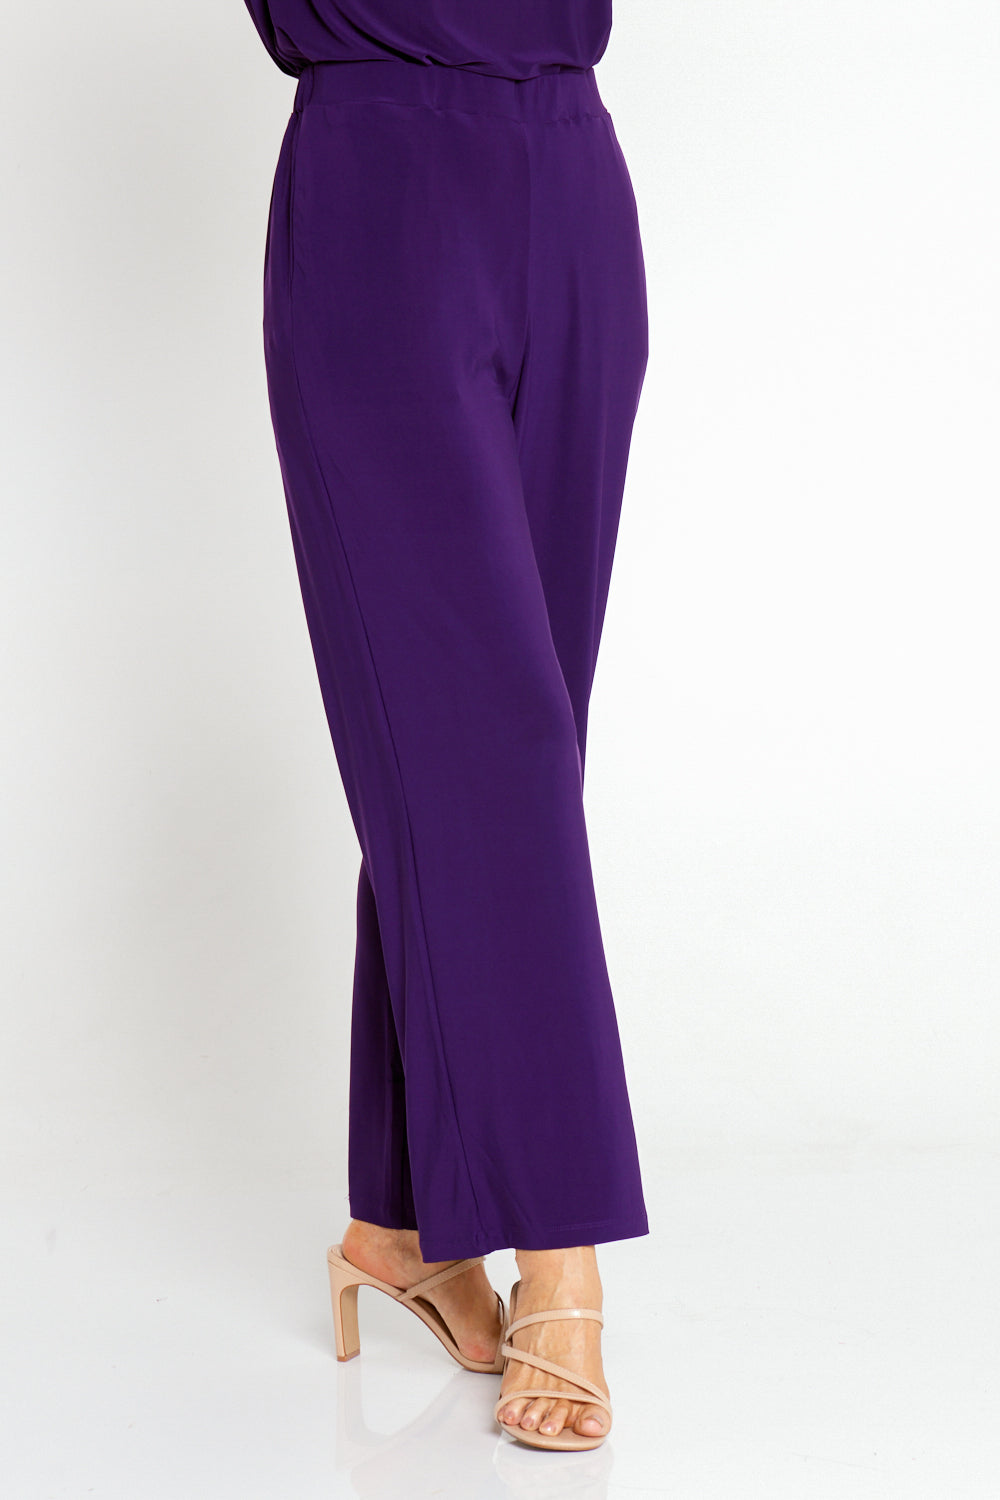 Sunset Jersey Core Pants - Purple